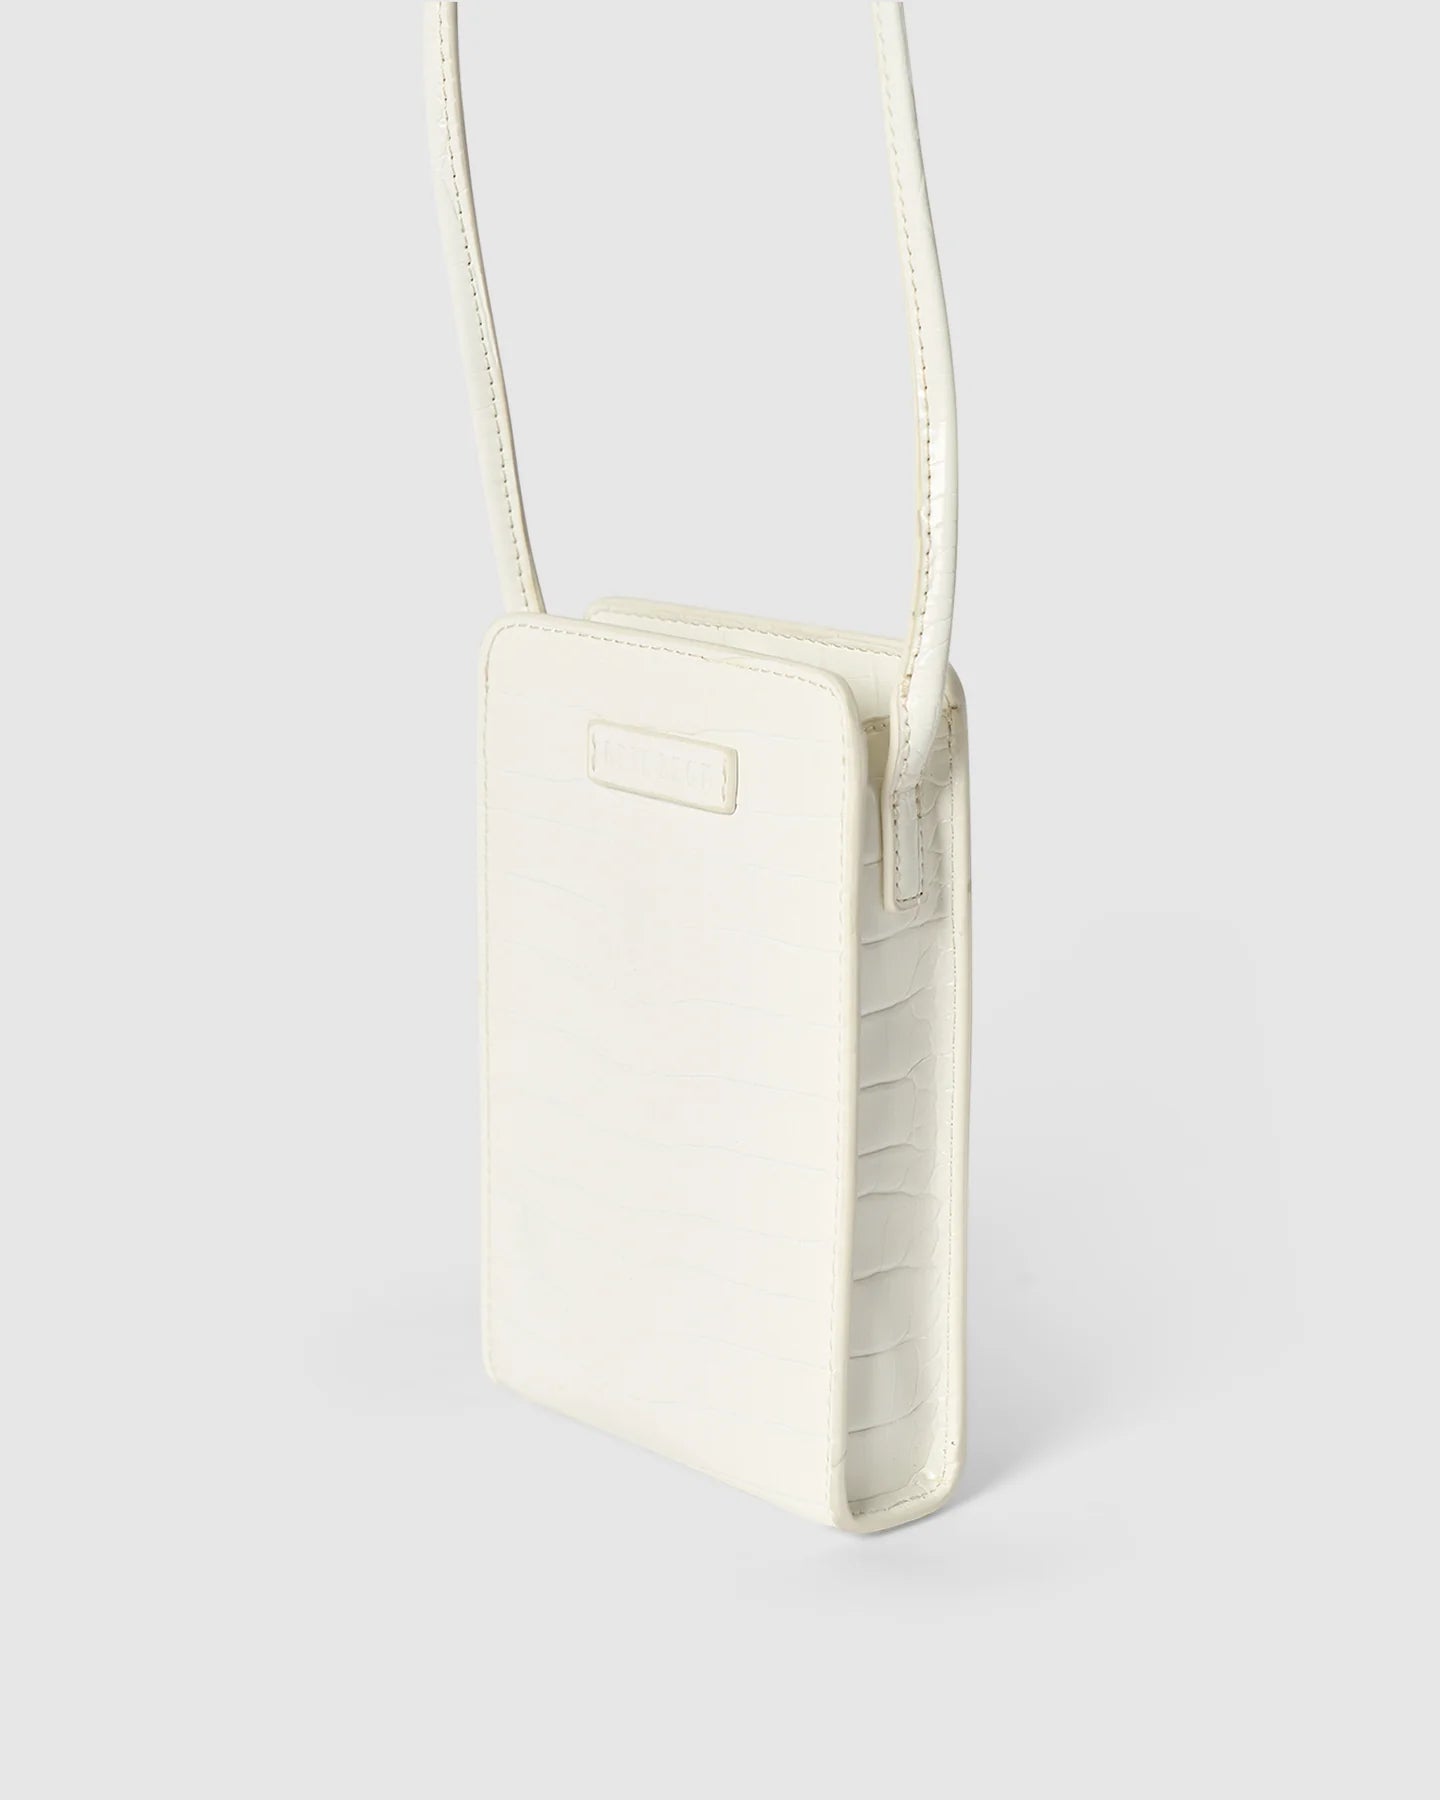 Paloma Phone Bag - WHITE BRUSHED CROC